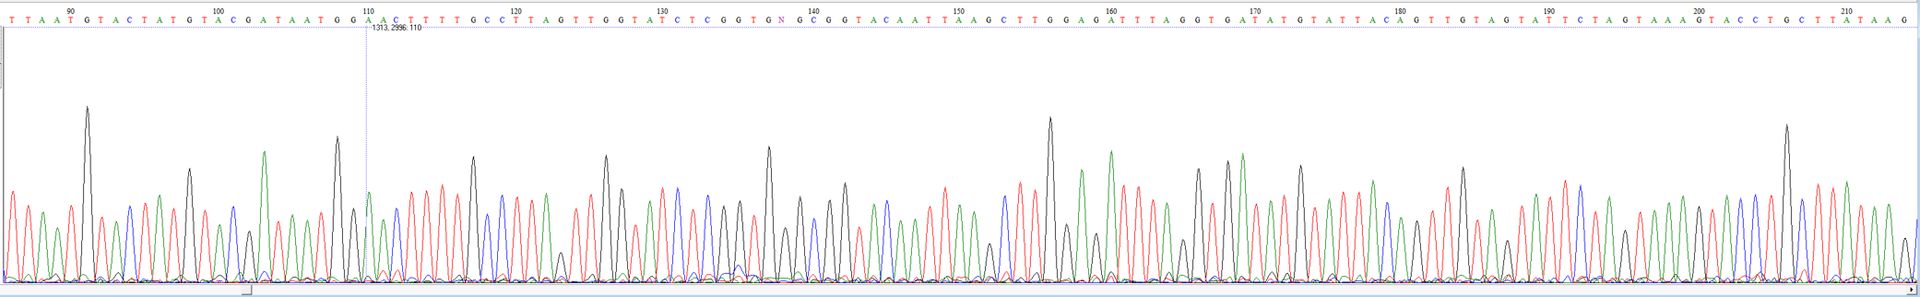 Exemple de chromatogramme Sanger